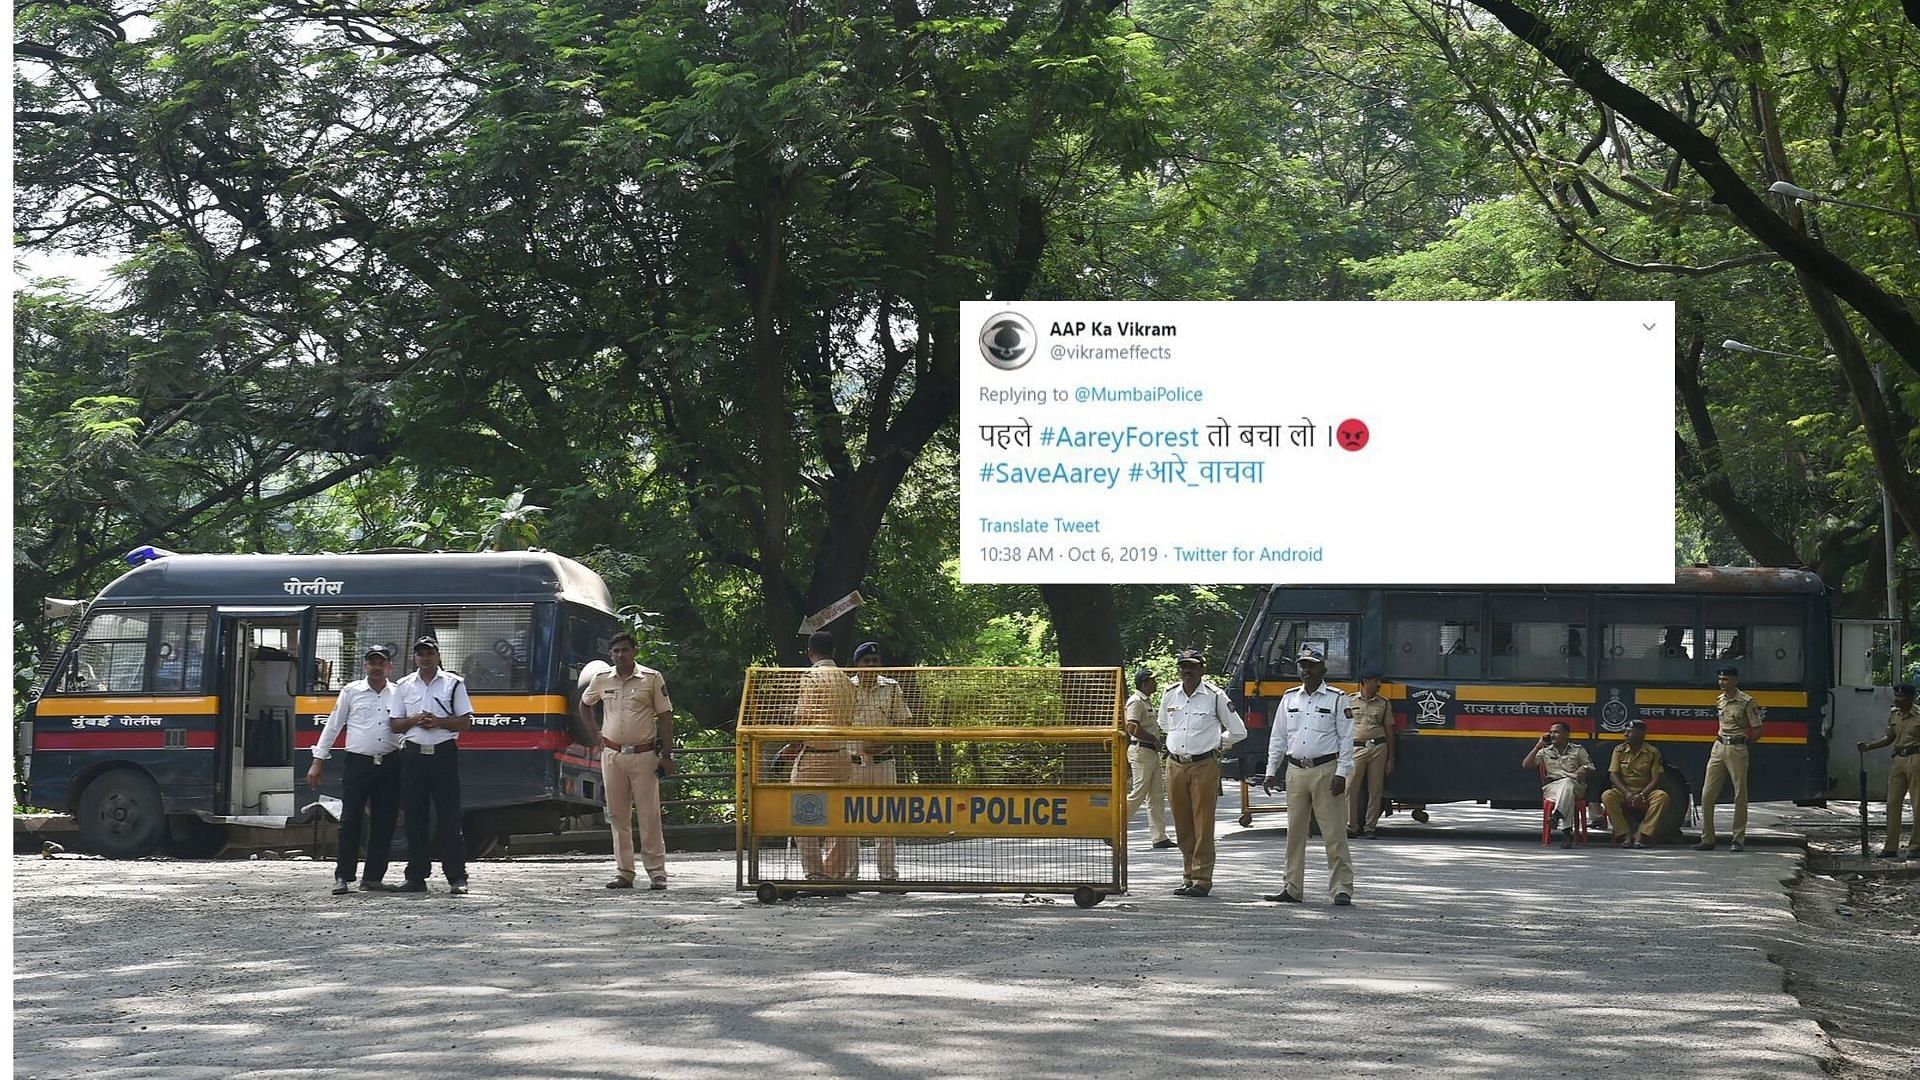 सोशल मीडिया यूजर्स आरे कॉलोनी मामले में मुंबई पुलिस की चुप्पी पर सवाल उठा रहे हैं.